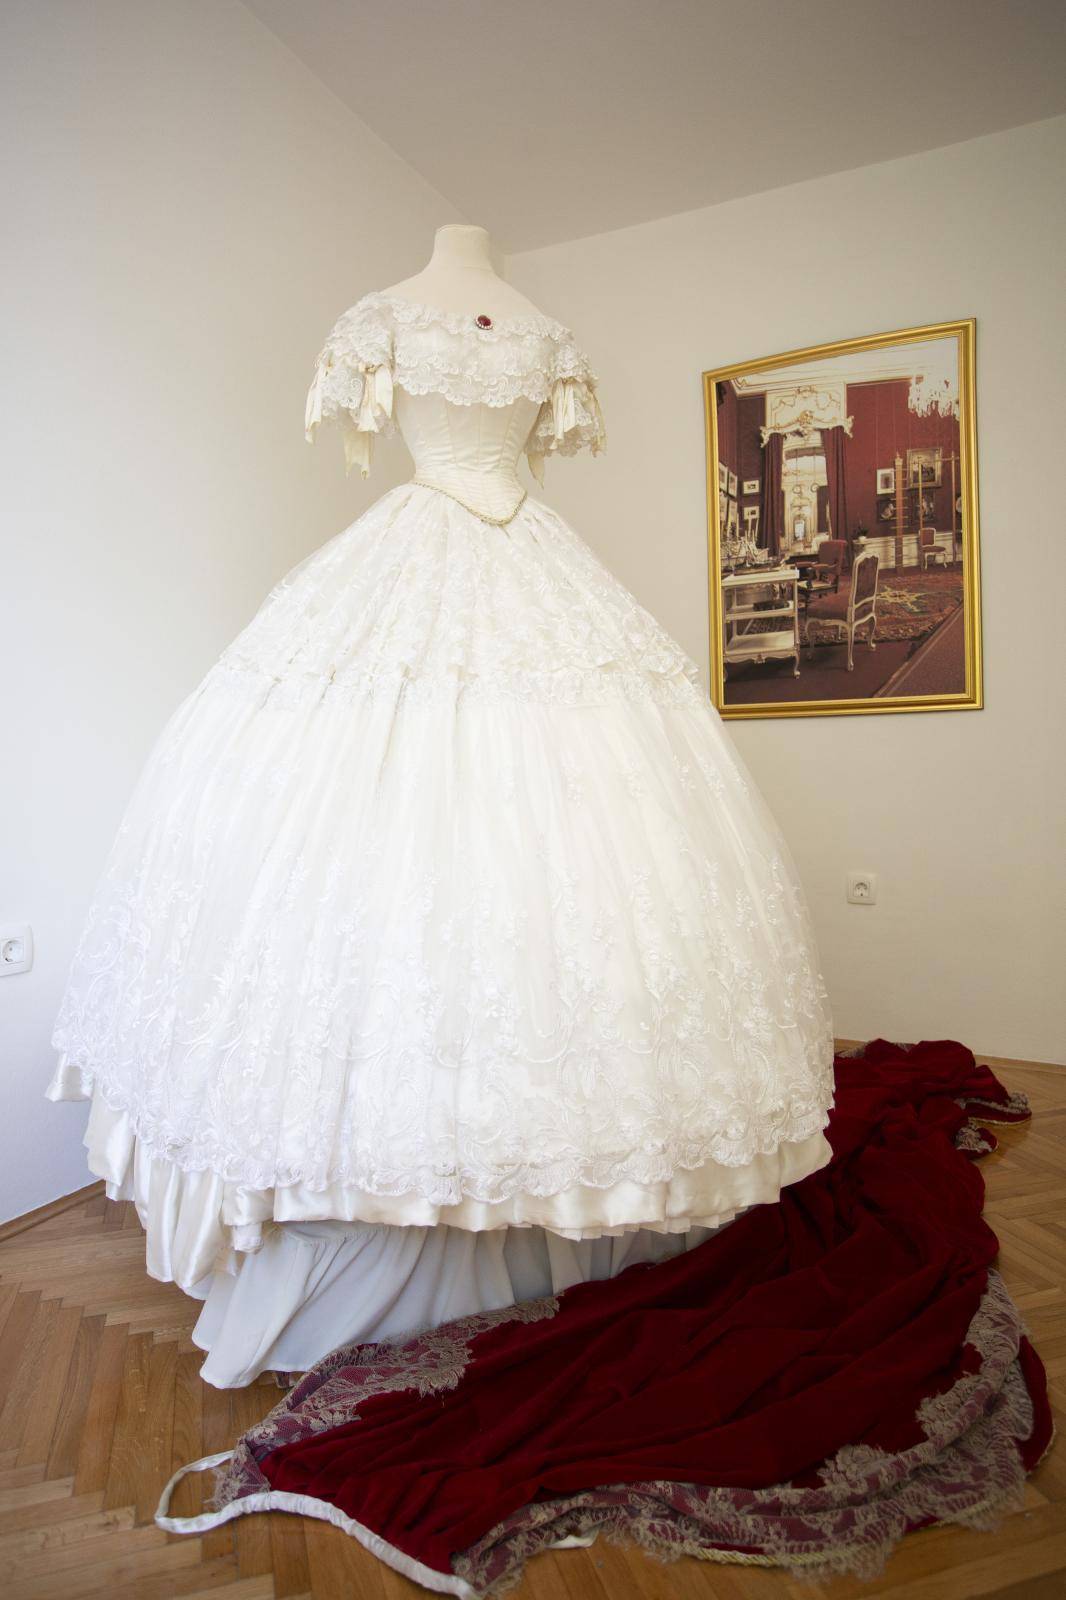 Raskošne replike haljina carice Sisi izložene su u srcu Opatije